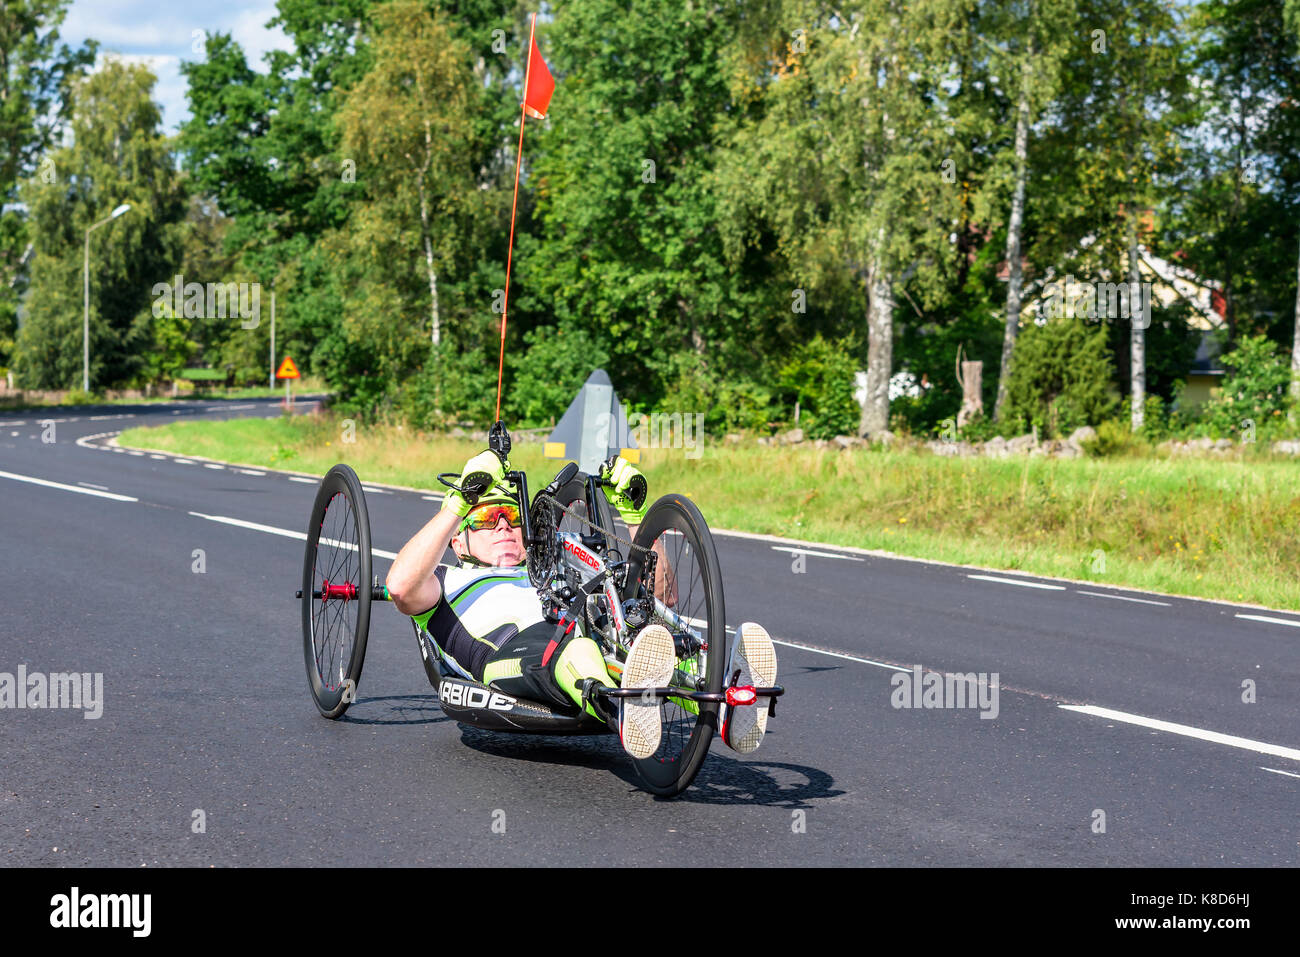 Emmaboda, Schweden - 28. August 2017: Real Life Dokumentarfilm der unbekannte Person Training auf einem Liegerad Hand trieb racing Dreirad auf der öffentlichen Straße. Stockfoto